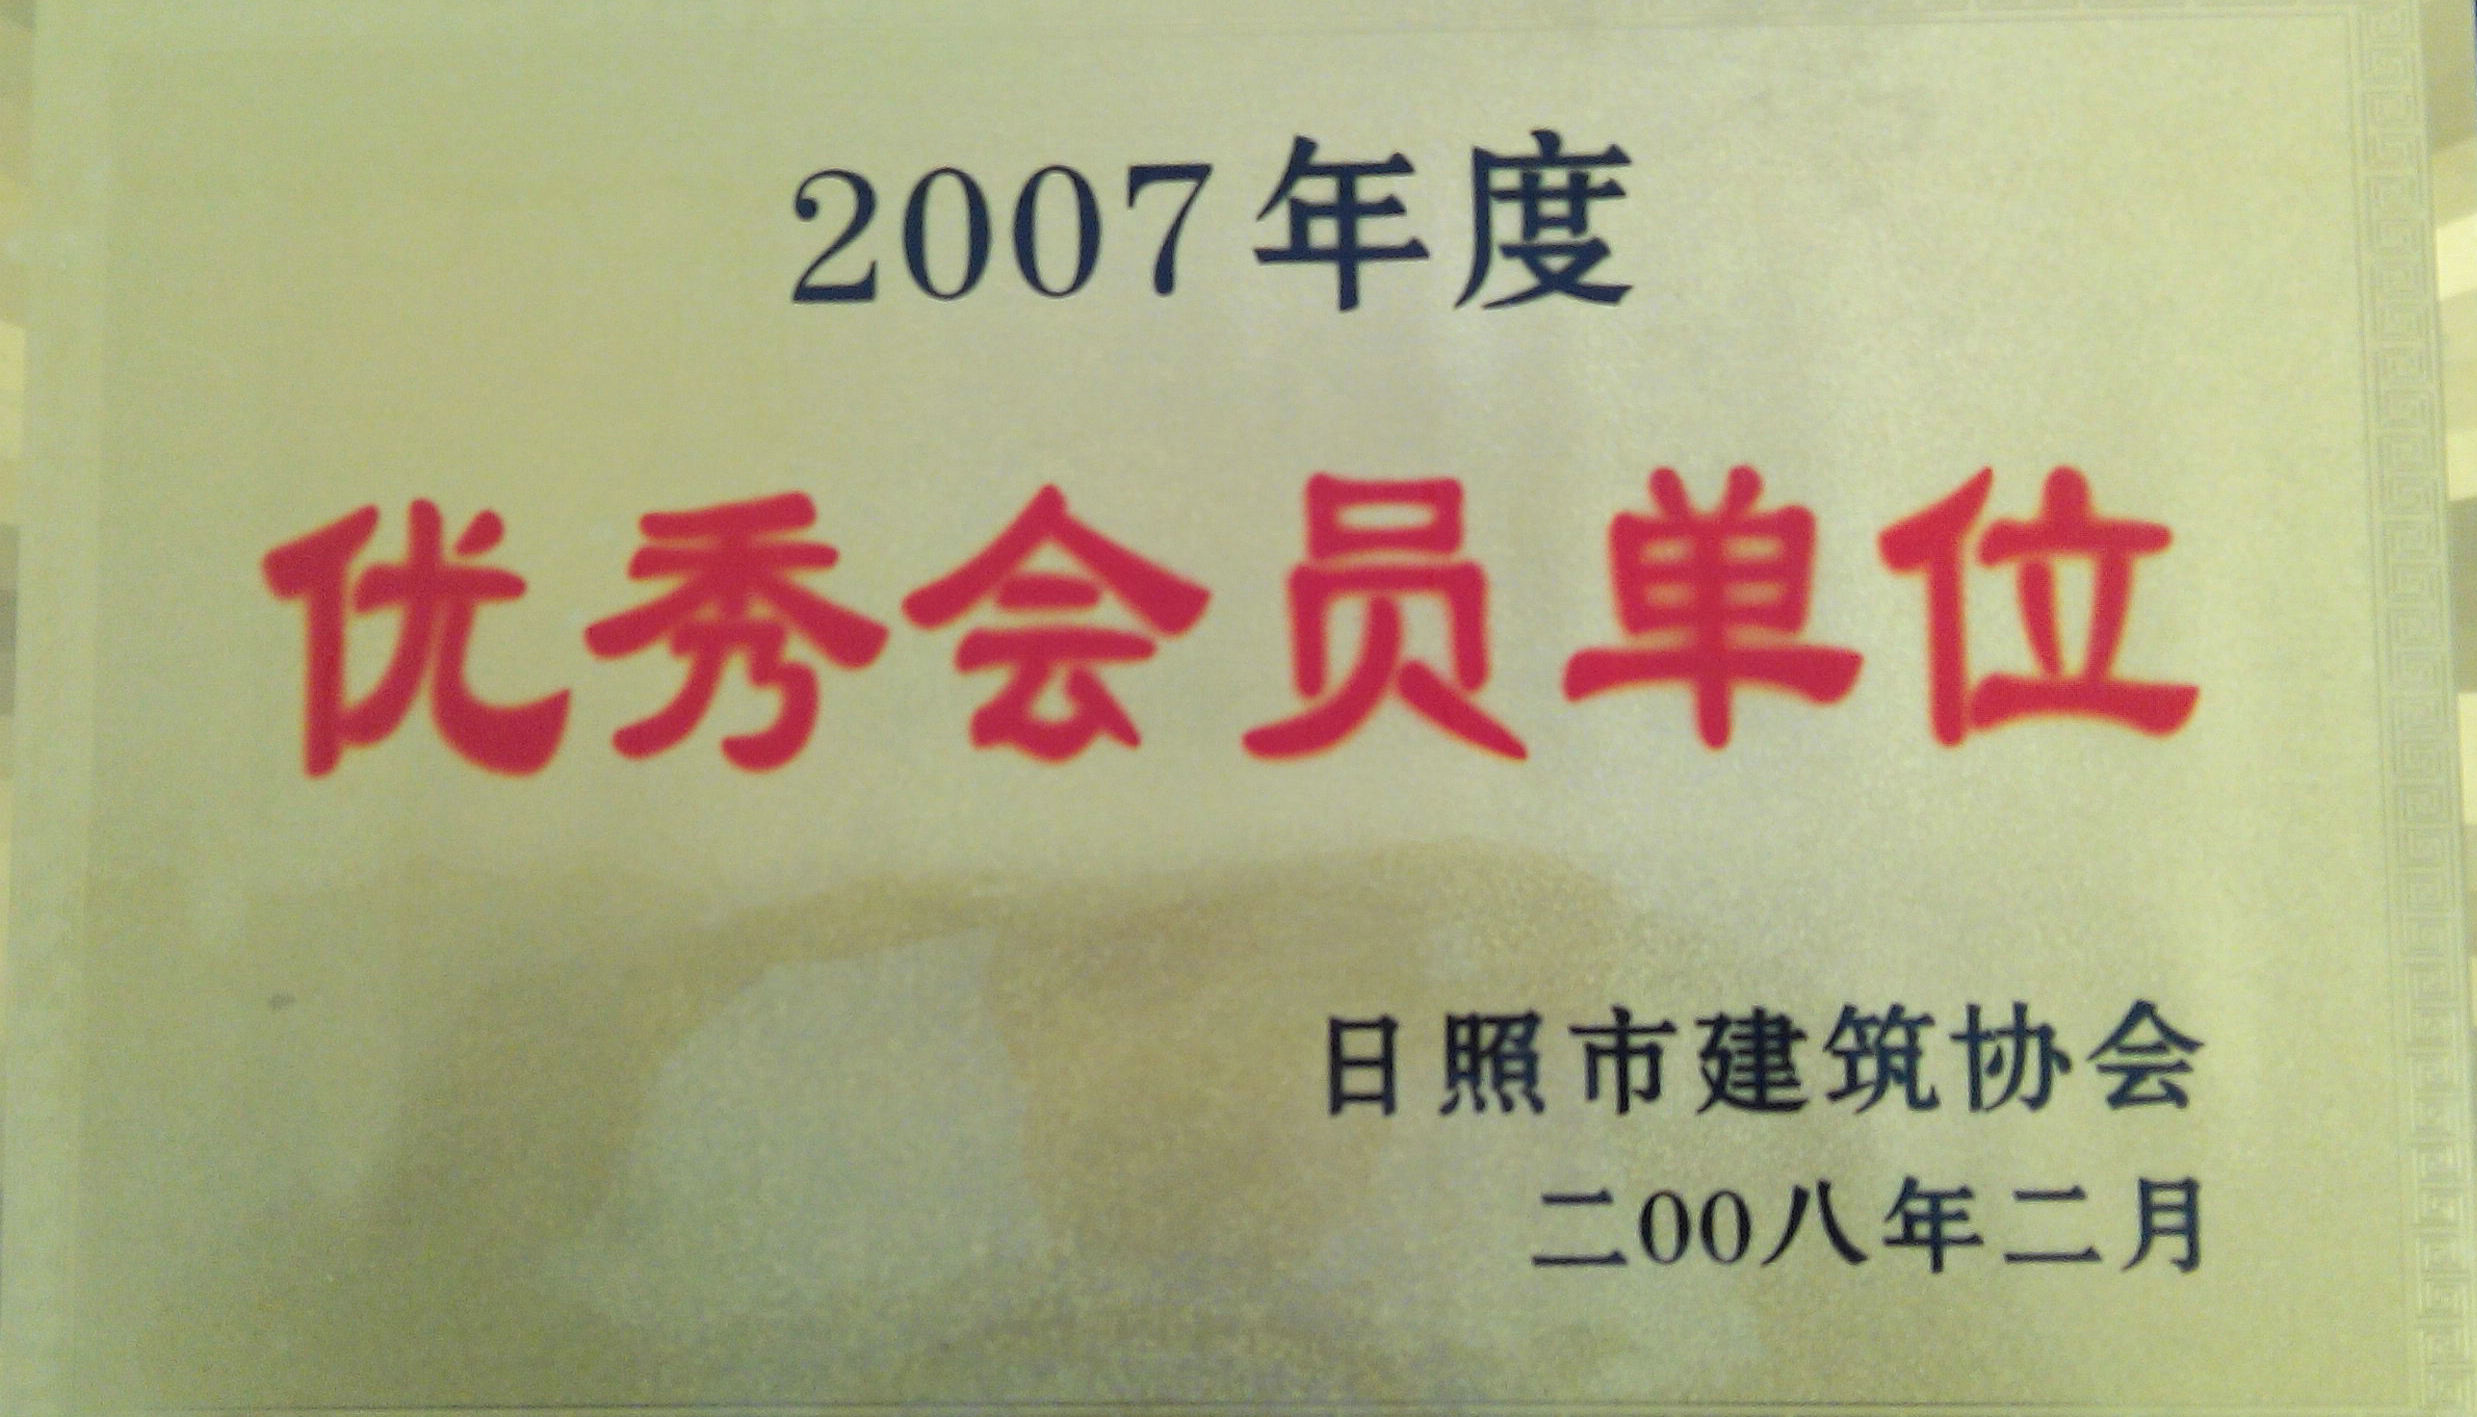 2007Աλ